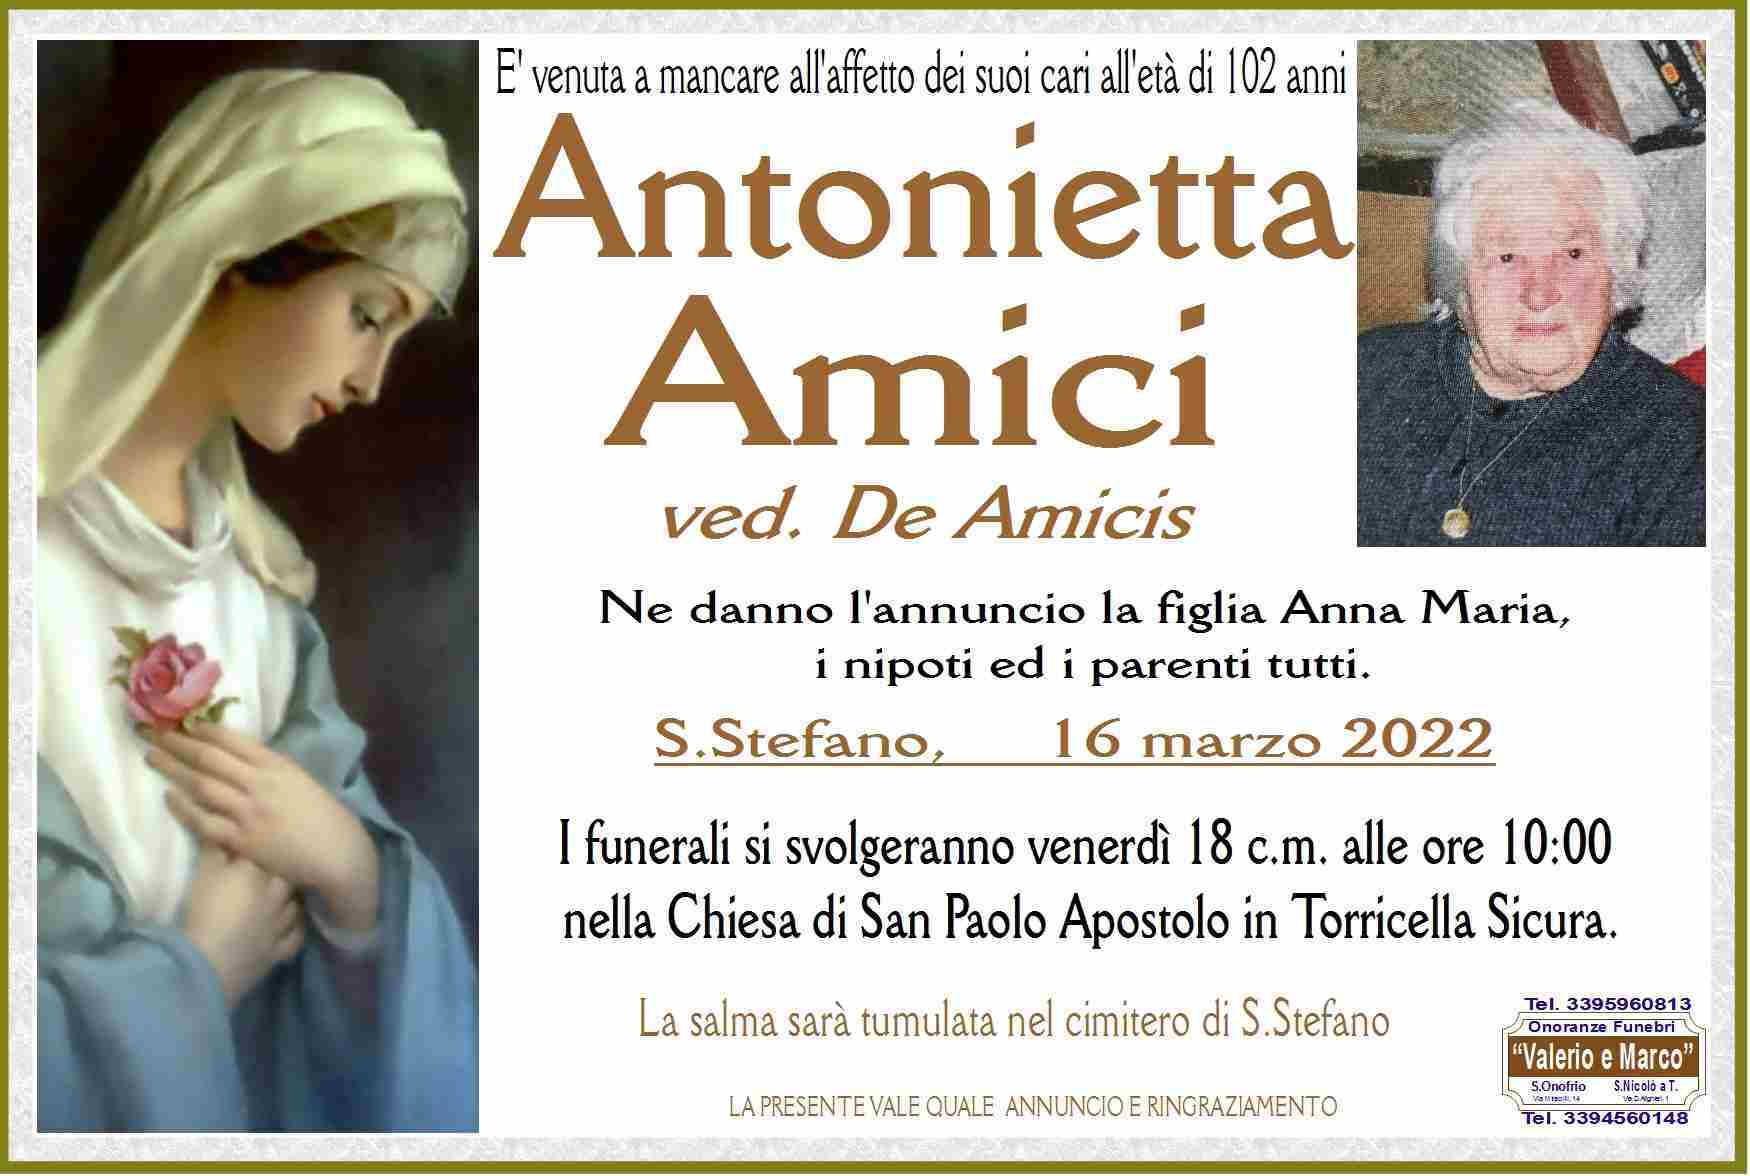 Antonietta Amici